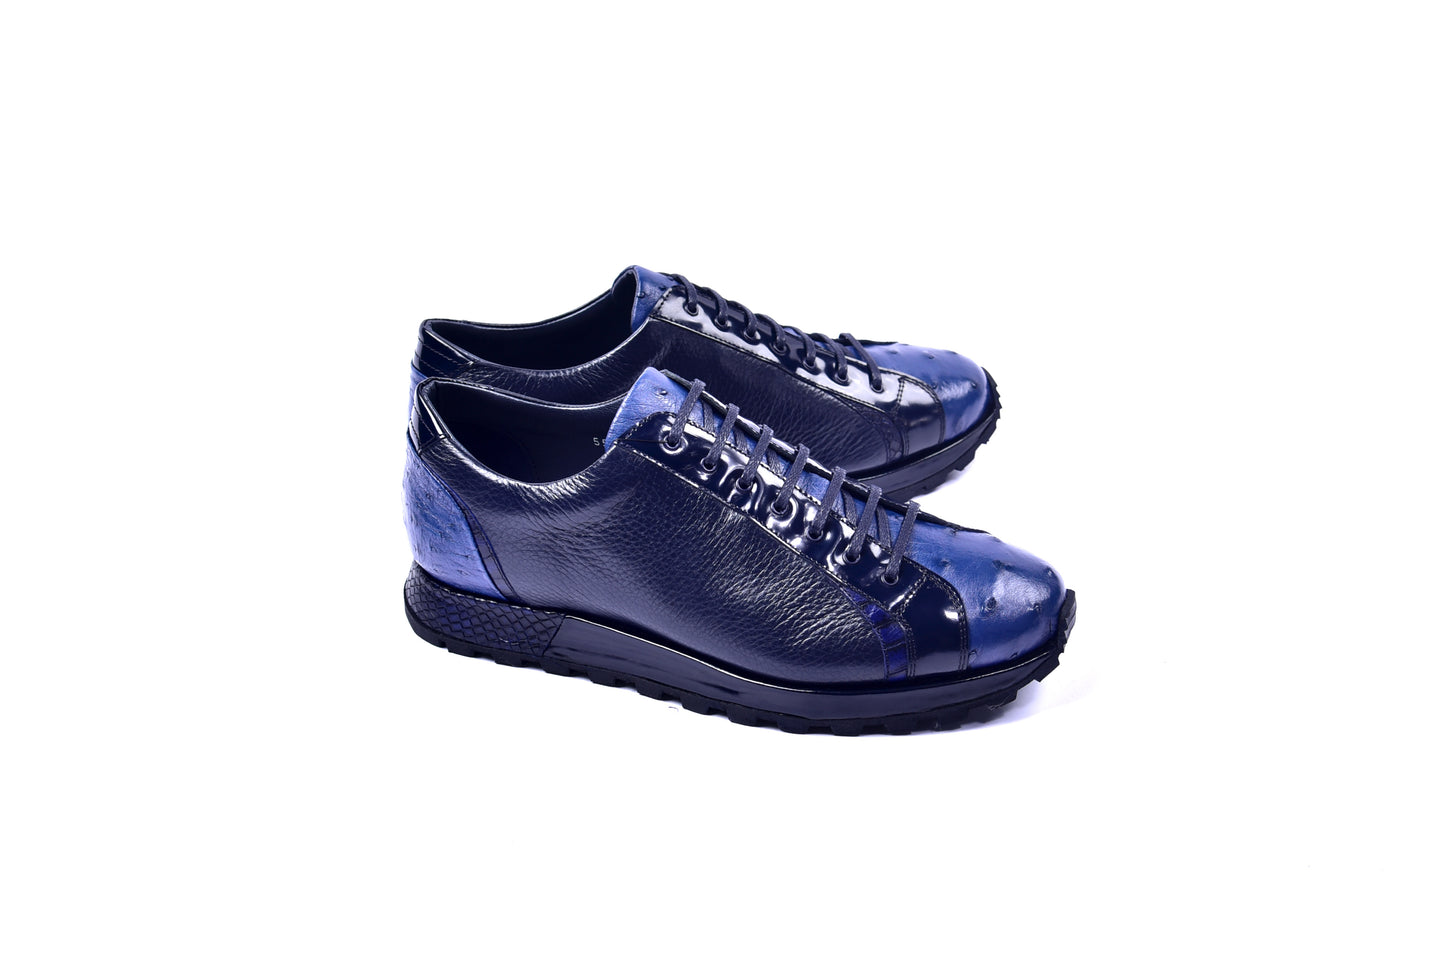 C0013042-5581  Genuine Ostrich Fashion Sneaker- Navy